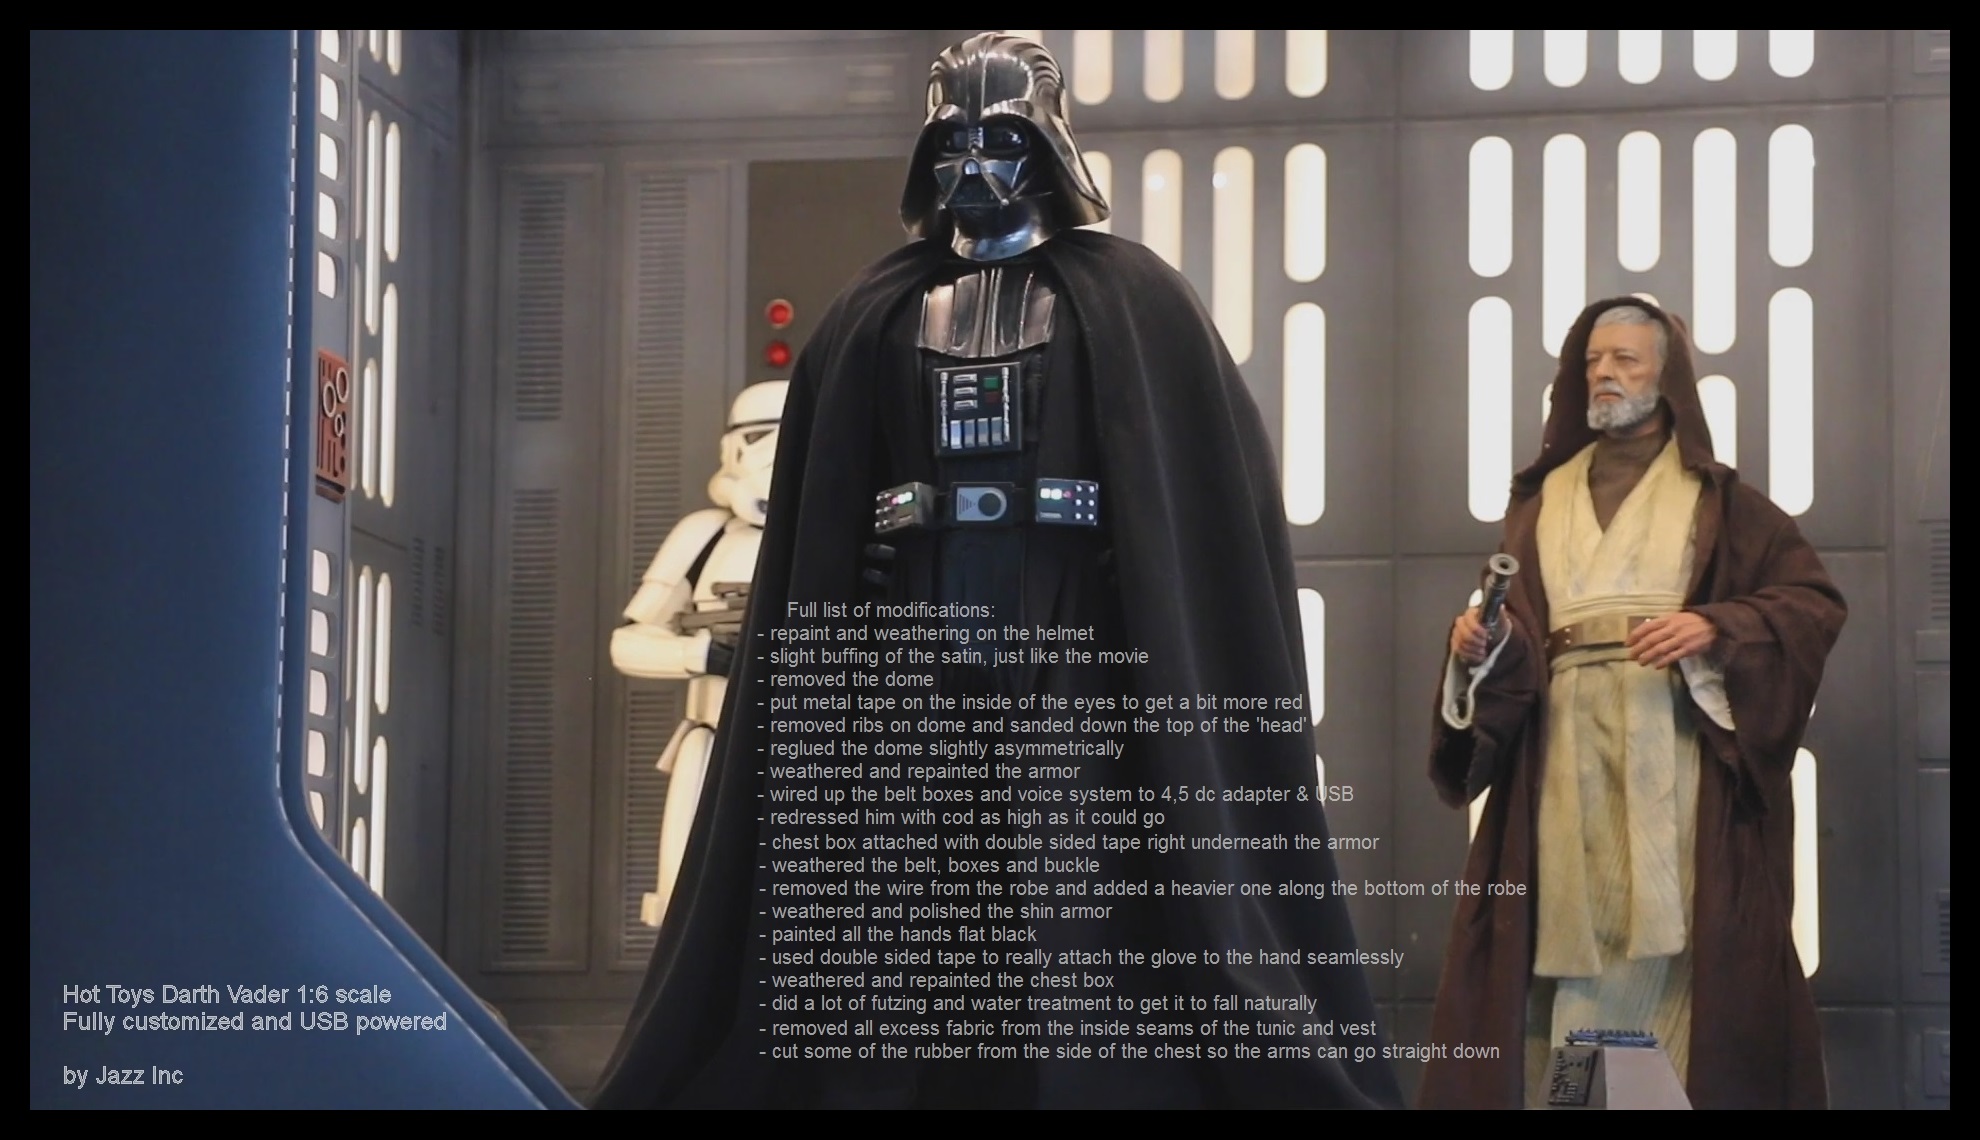 Hot Toys Darth Vader ANH 06.jpg